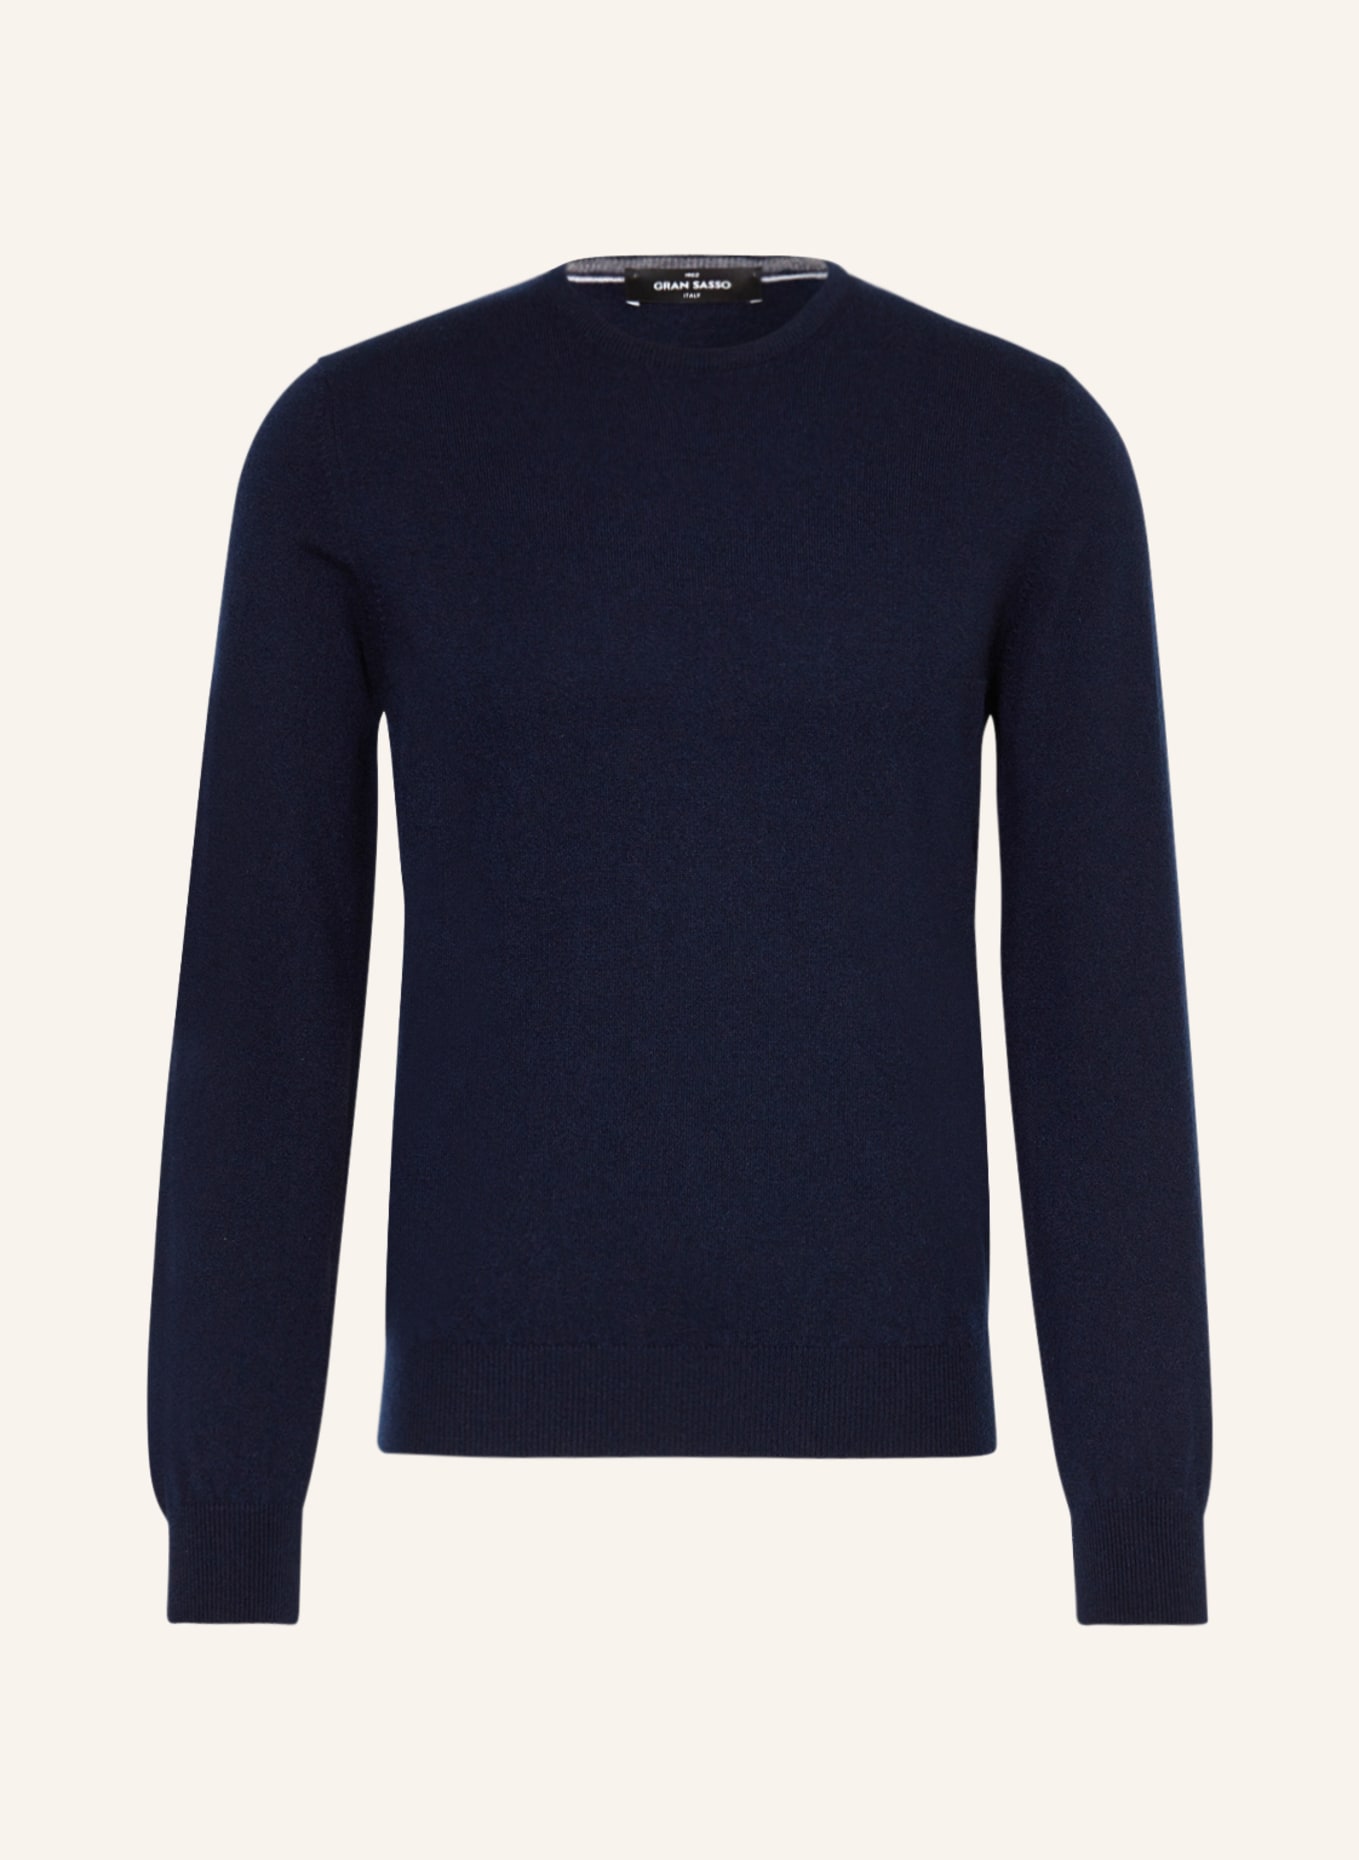 GRAN SASSO Cashmere-Pullover, Farbe: DUNKELBLAU (Bild 1)